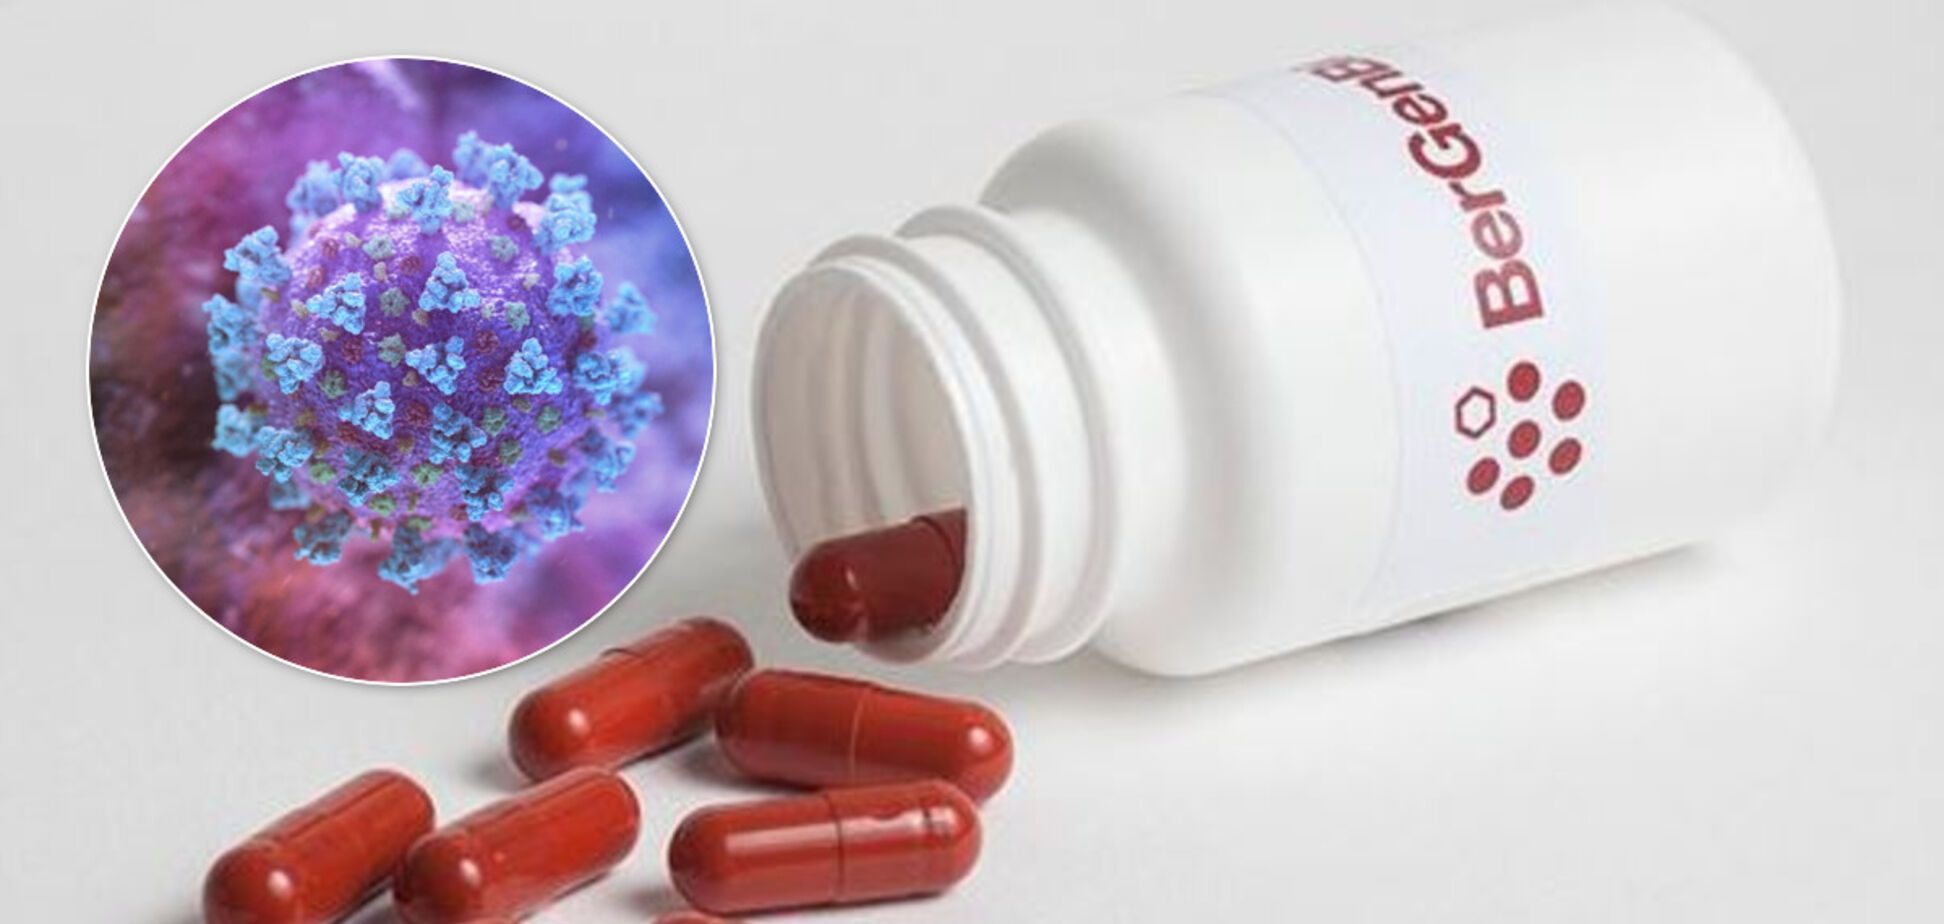 Достаточно таблетки в день: лекарство от рака протестируют на 120 больных коронавирусом